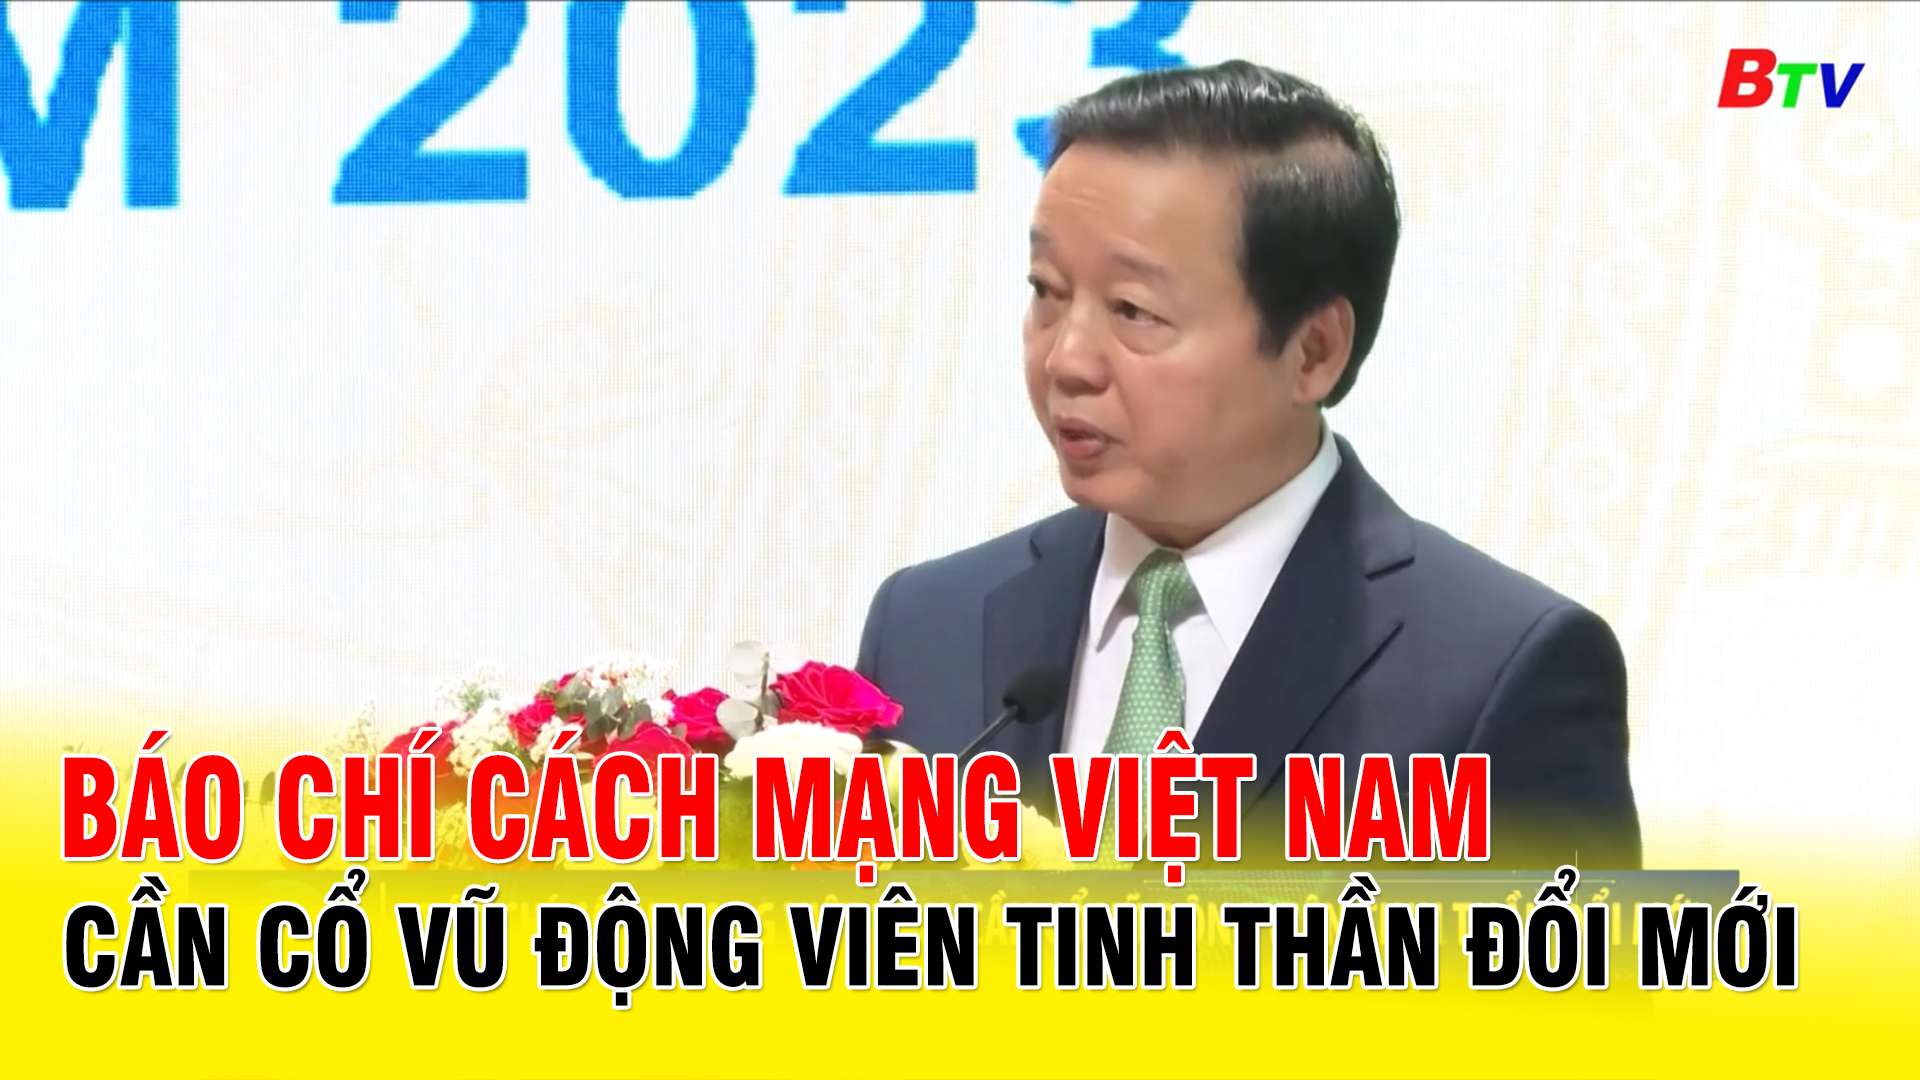 Báo chí Cách mạng Việt Nam cần cổ vũ động viên tinh thần đổi mới